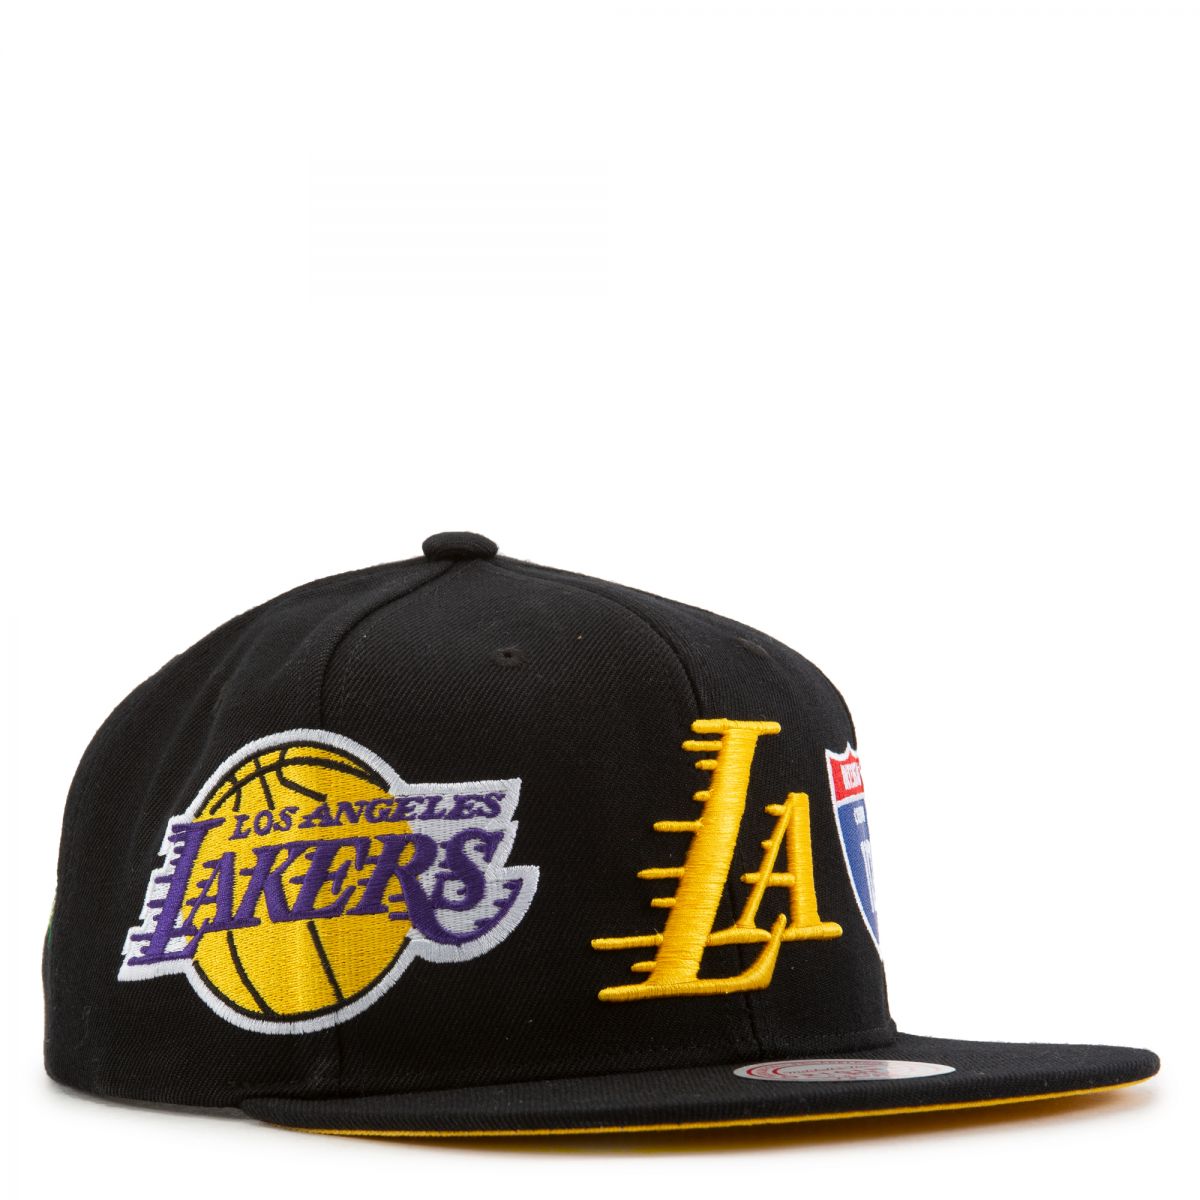 HATSURGEON x Mitchell & Ness Lakers Basic Logo Louis Vuitton Strapback